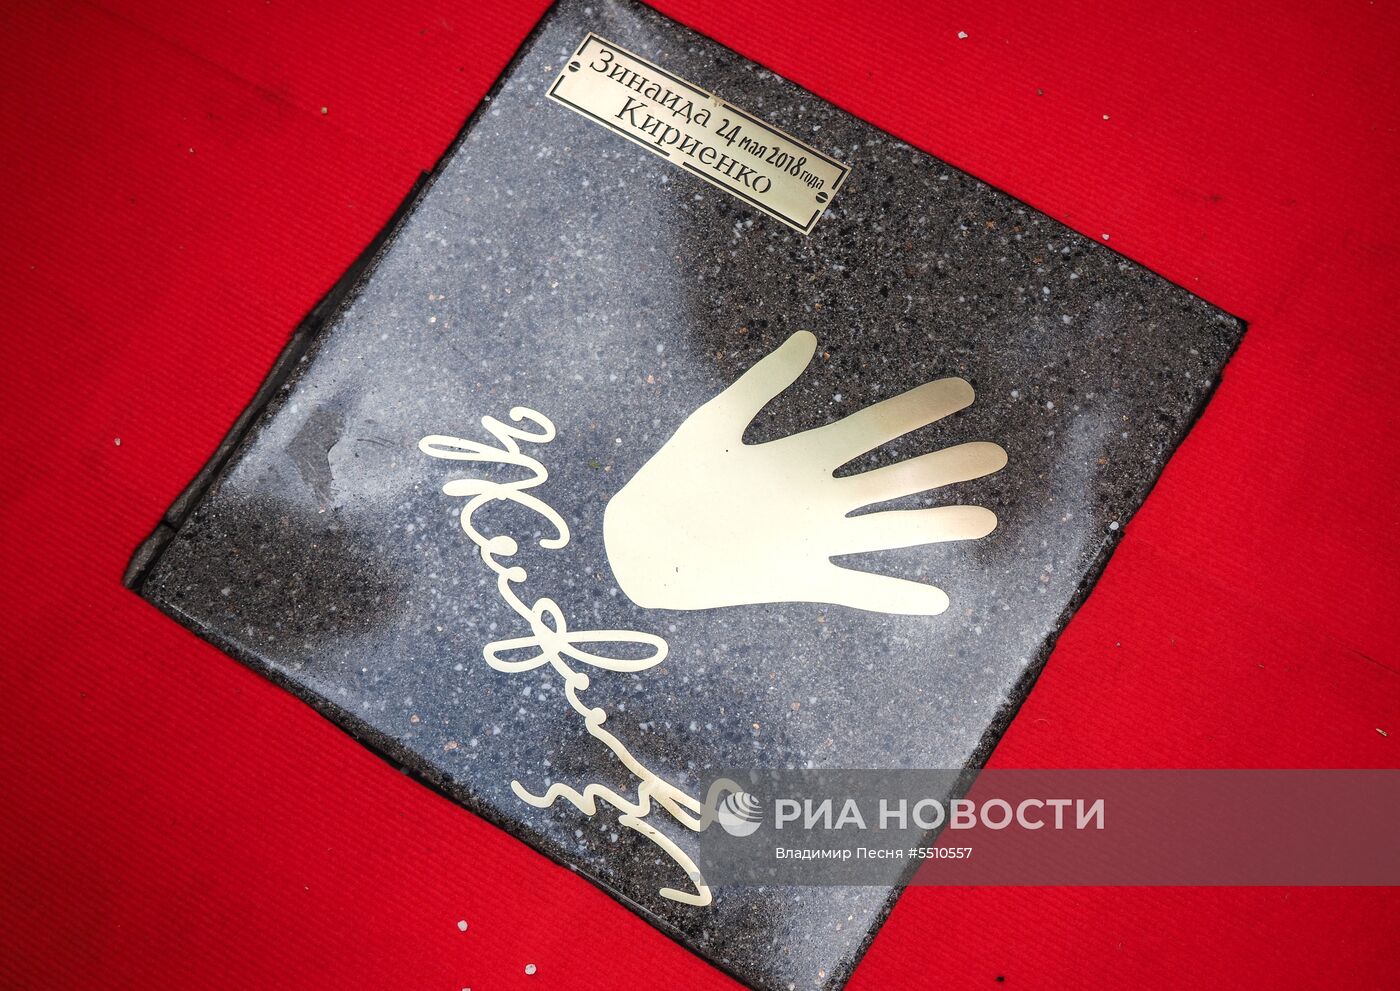 Закладка именных плит актерам на Площади звезд в Москве 